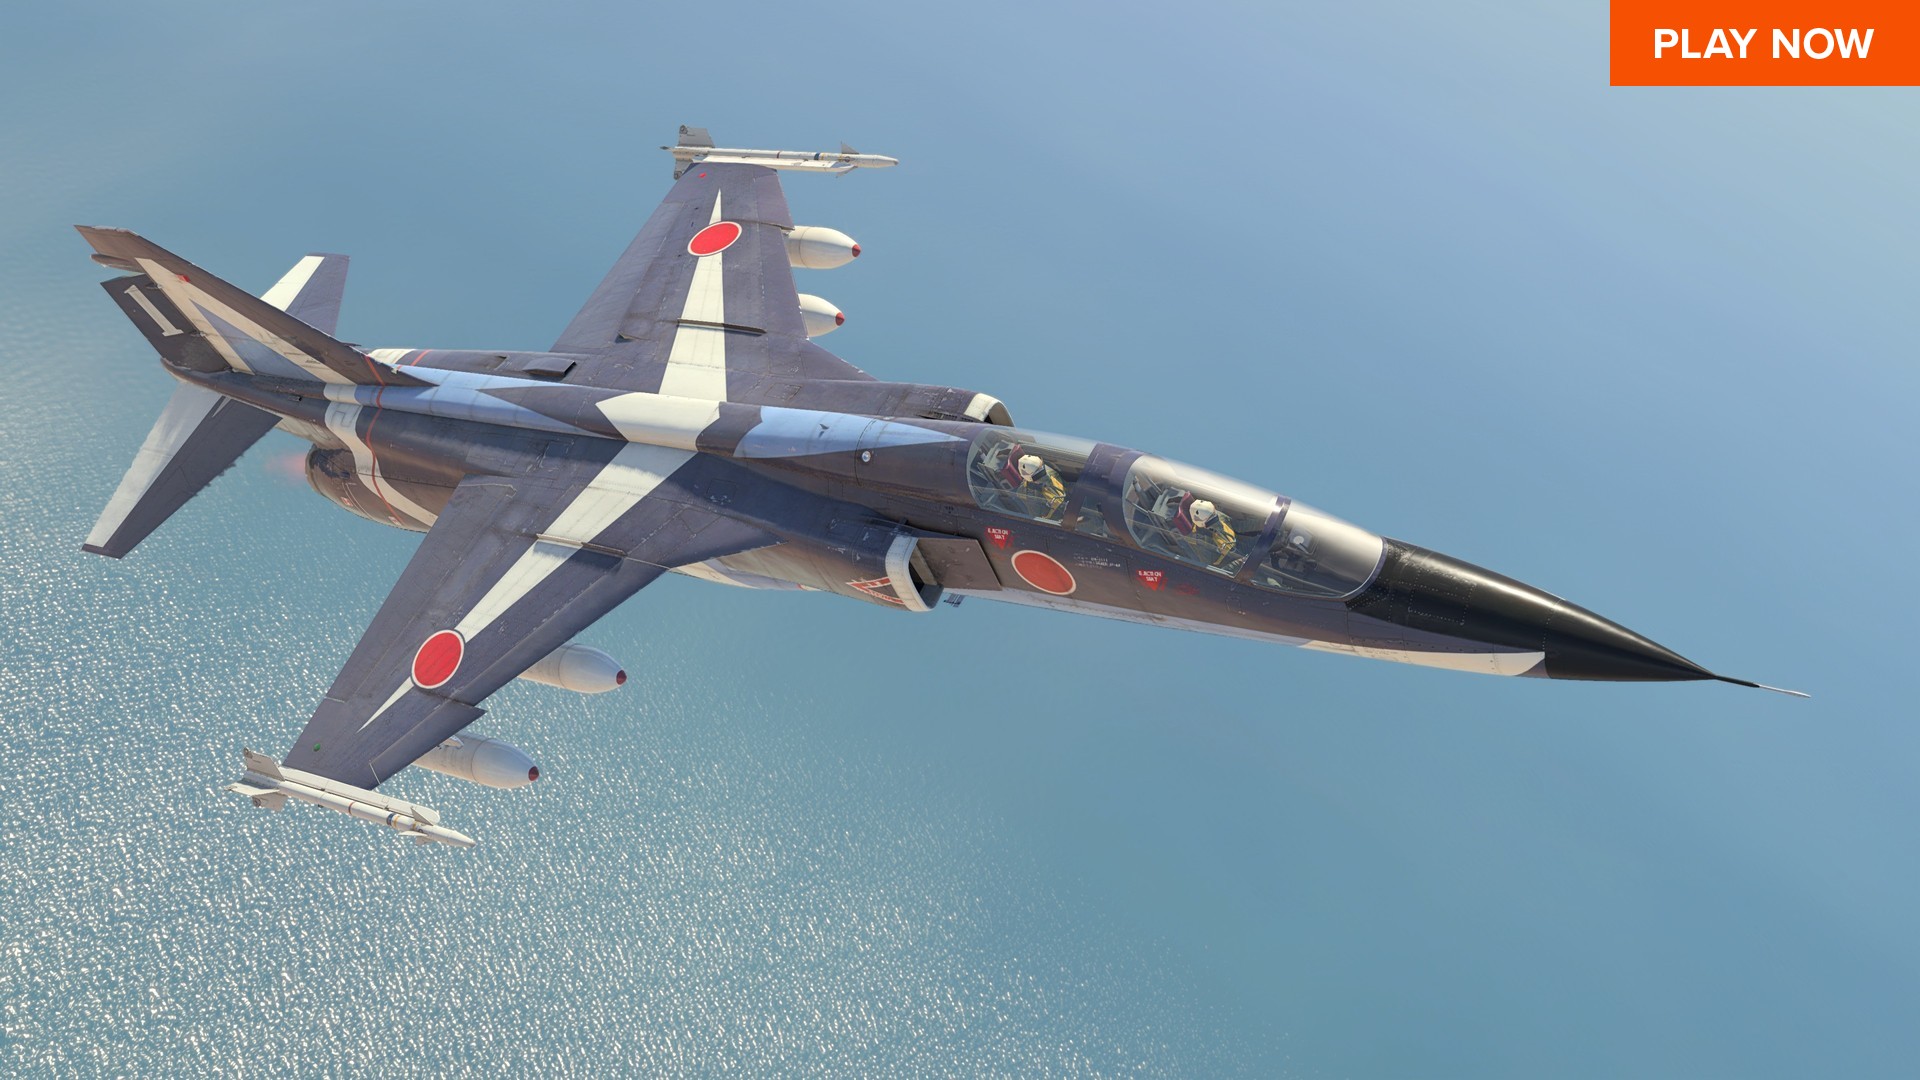 En iyi ücretsiz PC oyunlarından biri olan War Thunder, savaş jetlerinde uçup düşman uçaklarını düşürmenizi sağlıyor.